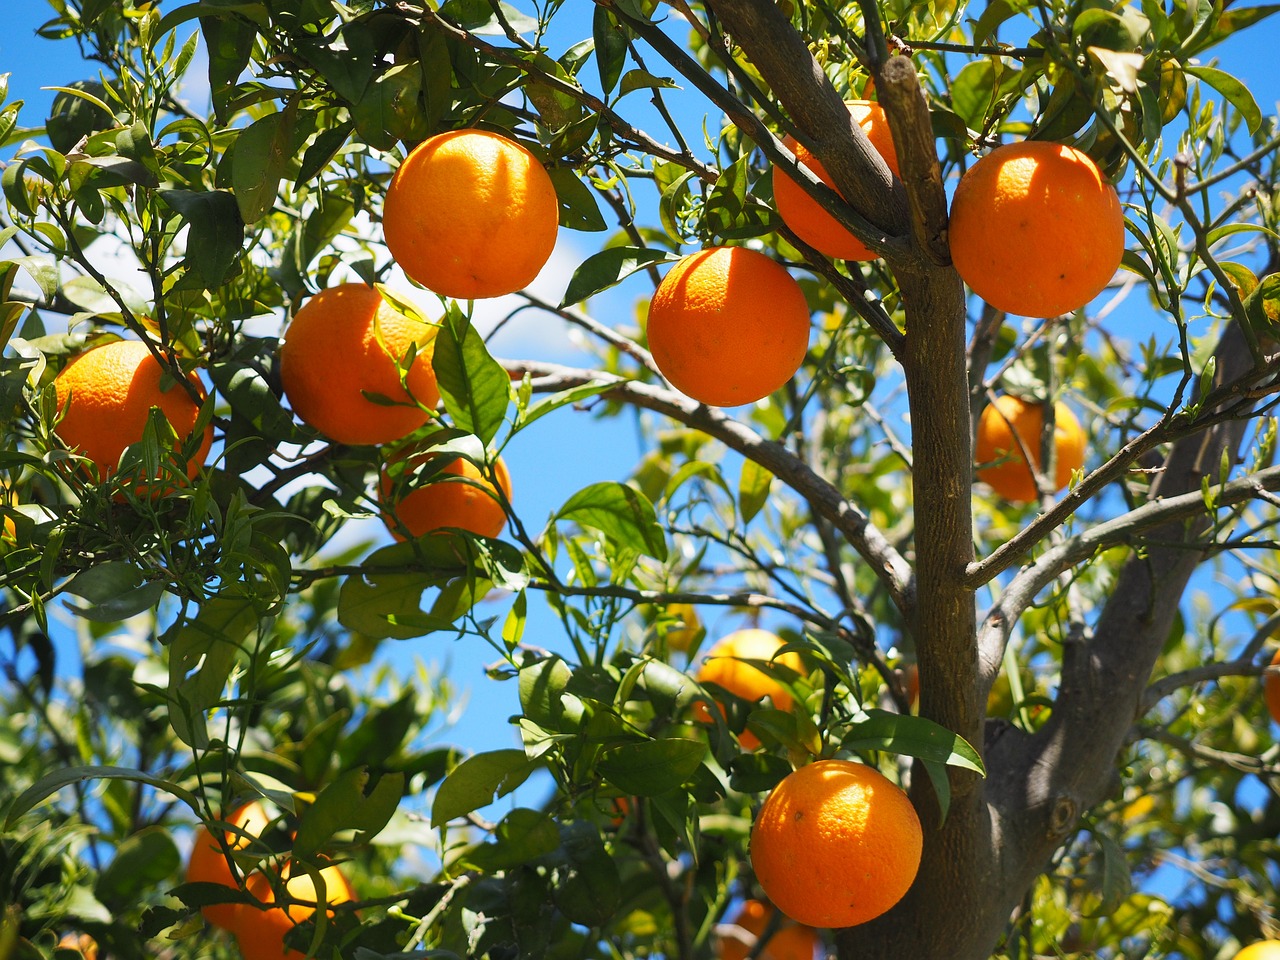 Pragas, calor e falta de água explicam porque há menos laranjas